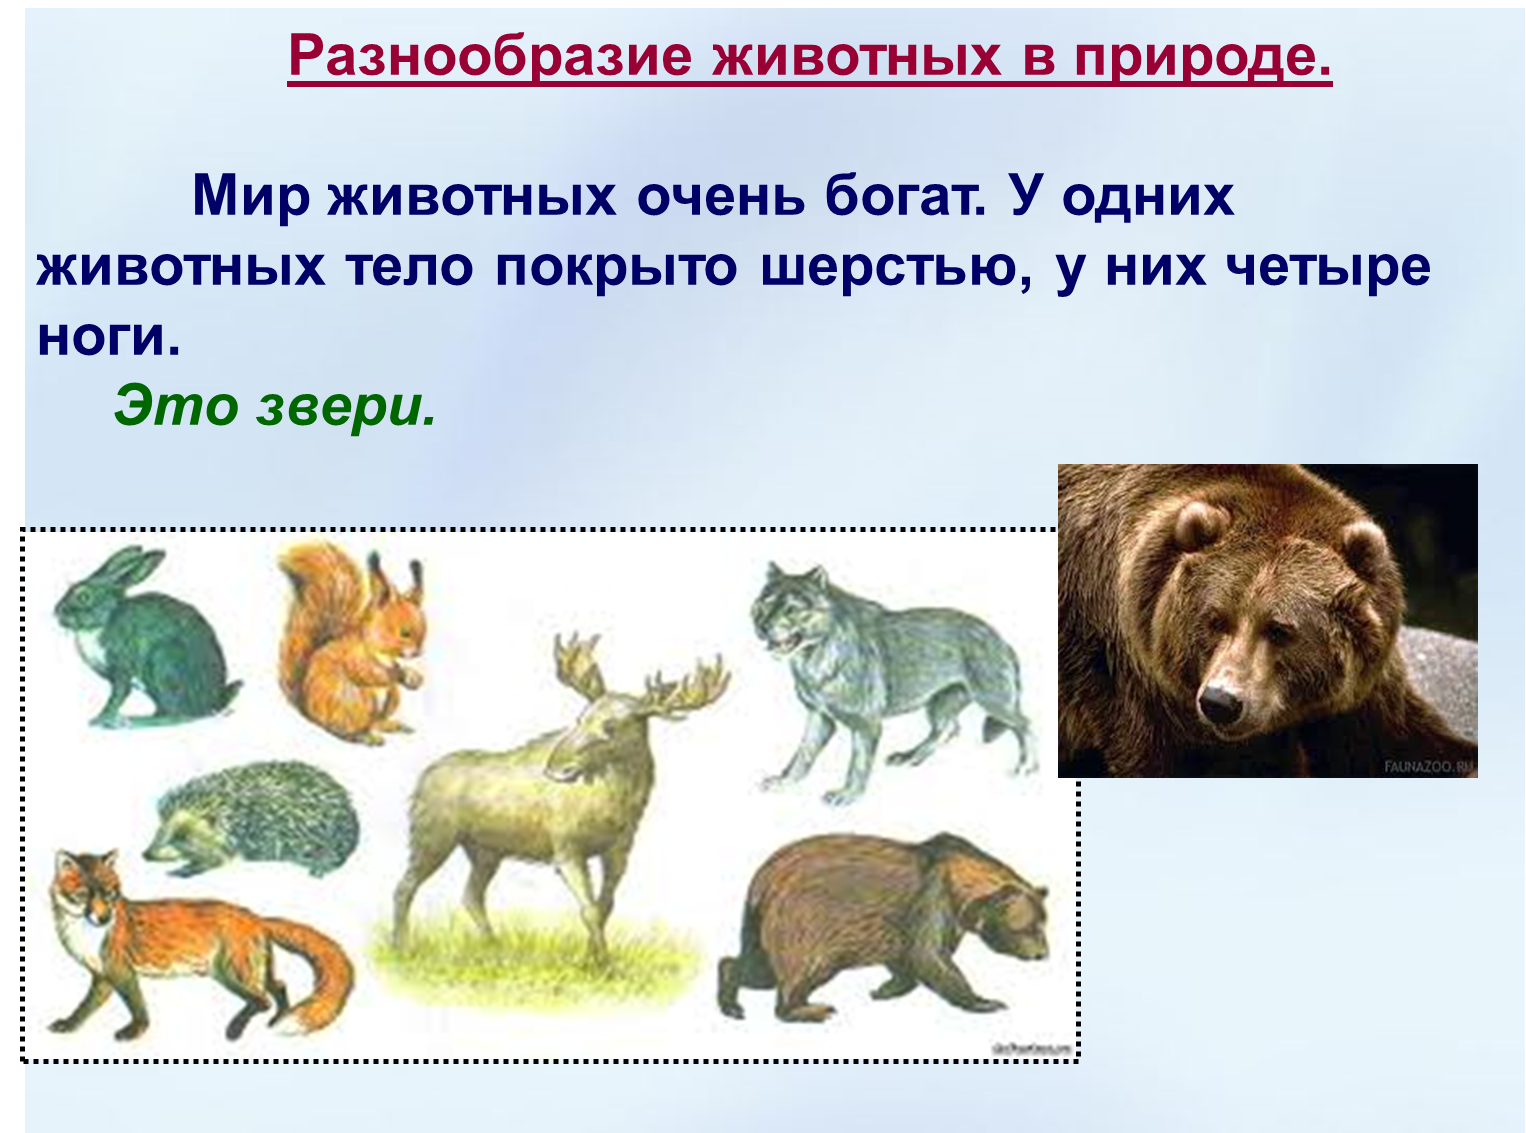 Многообразие где. Животных разнообразие животных. Разнообразие зверей. Разнообразие животных презентация.